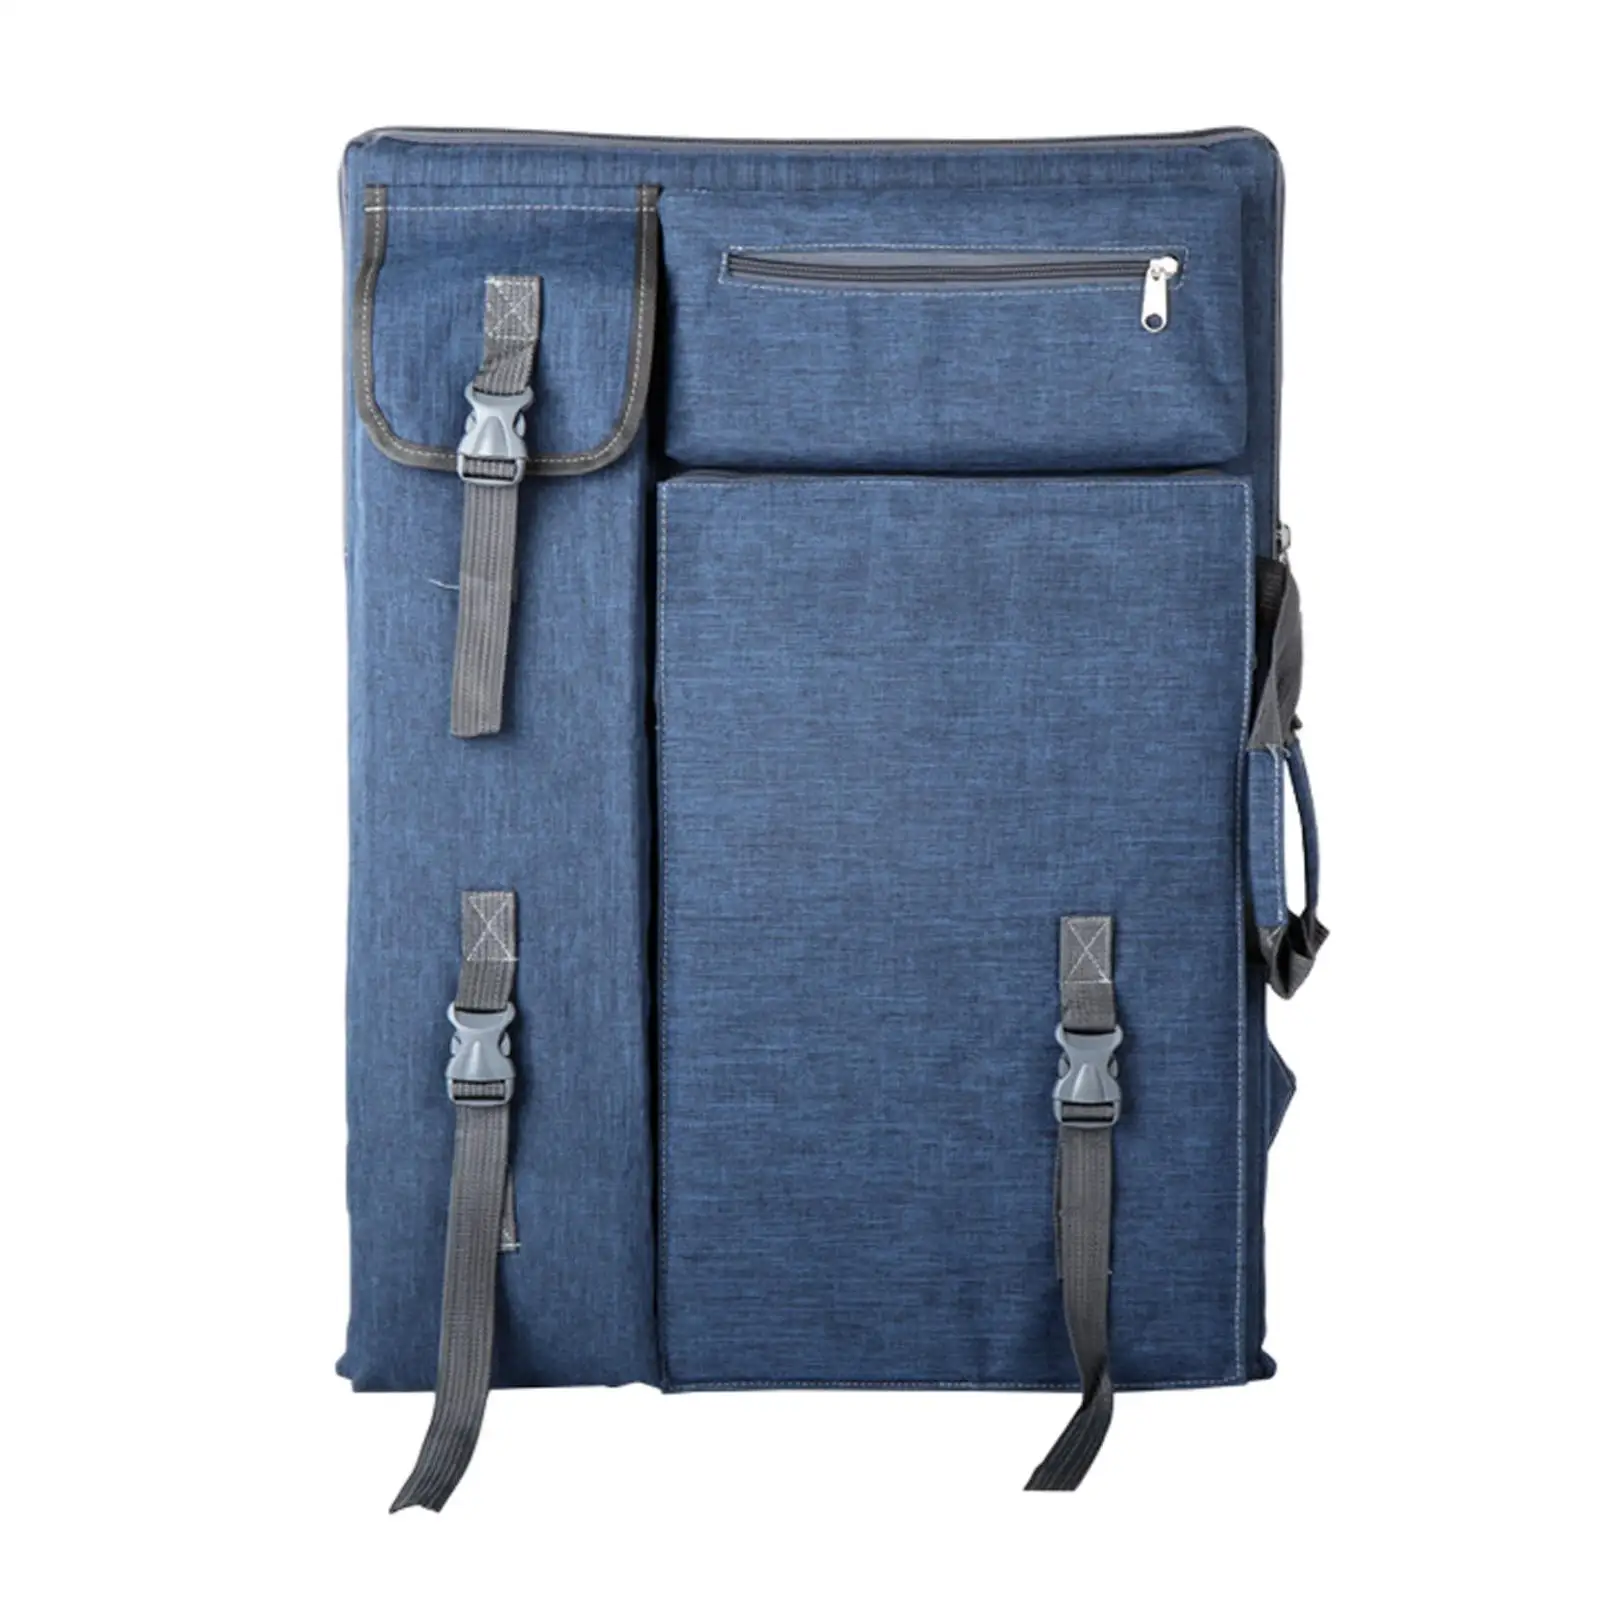 Art Portfolio Case Blue Water Resistant Breathable Adjustable Shoulder Straps Art Drawing Board Bag Painting Bag Backpack